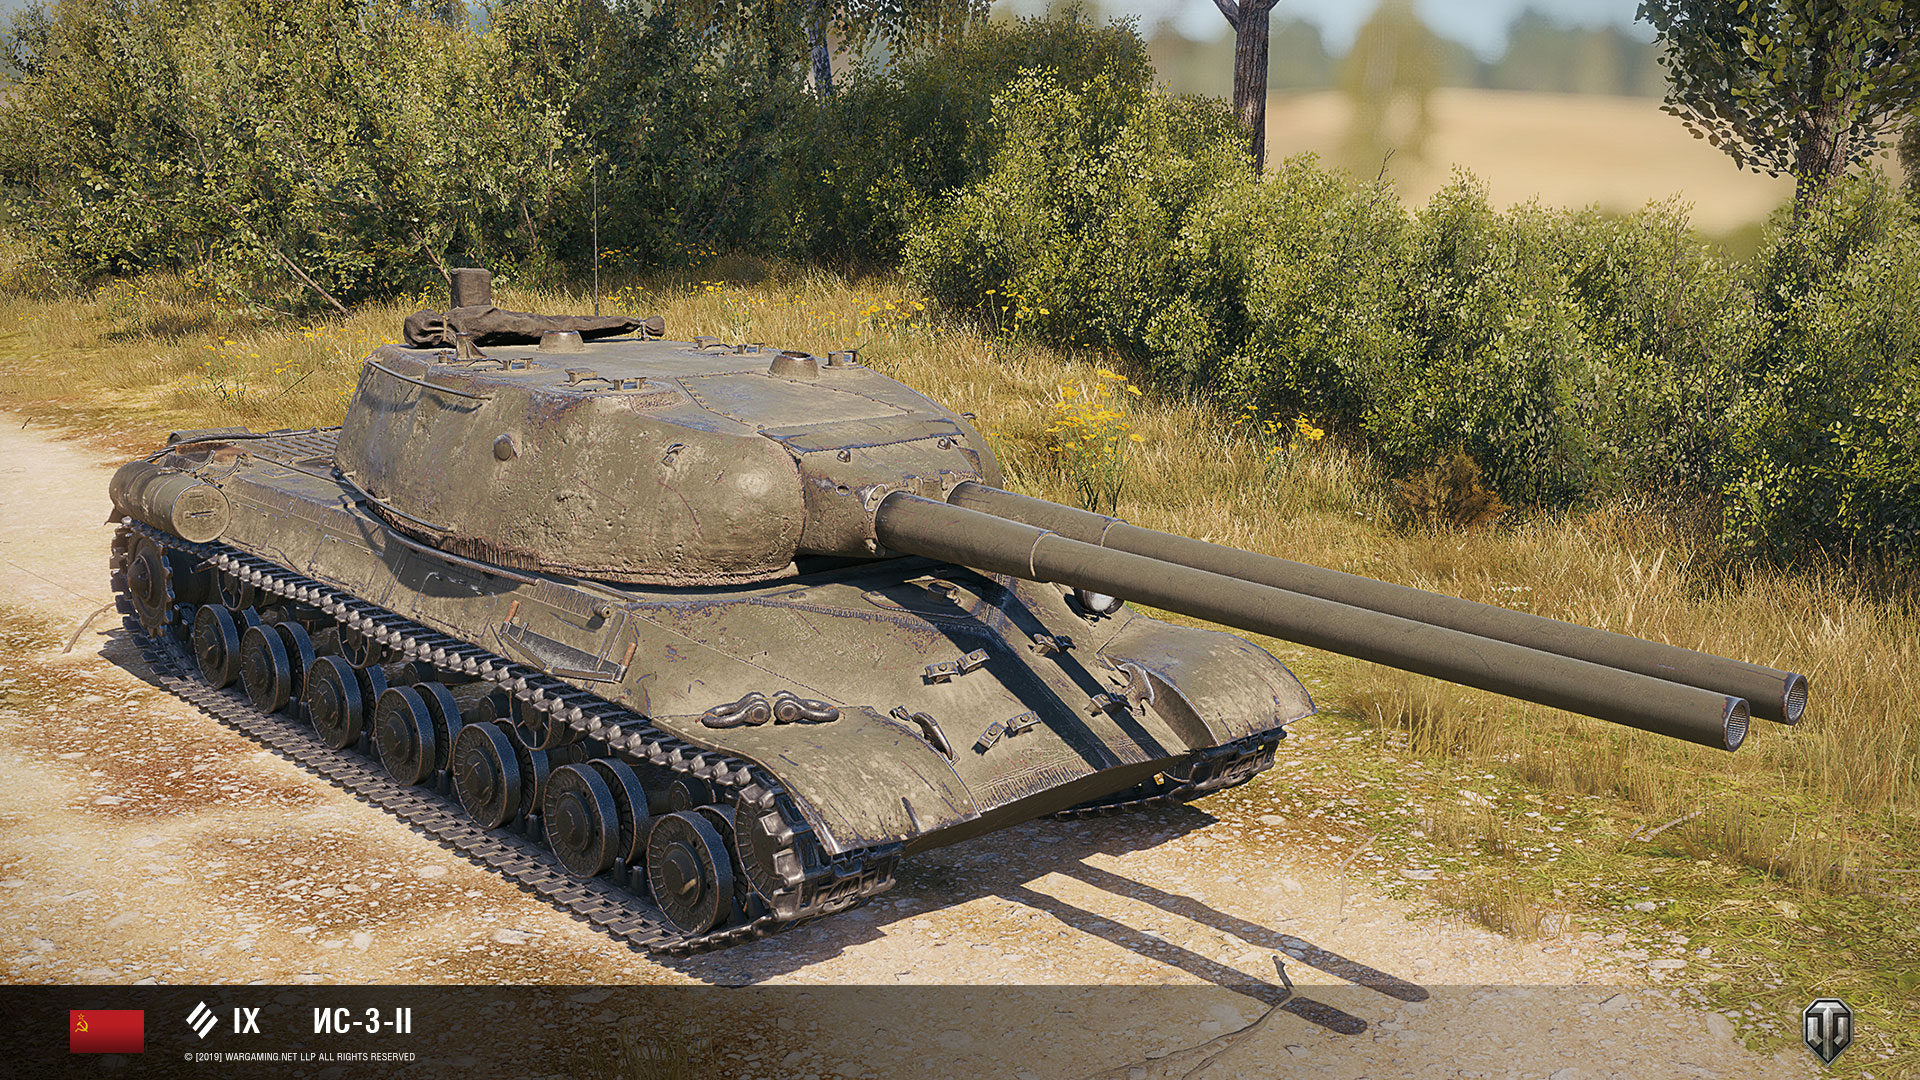 Tanques de cano duplo estão indo para o World of Tanks 2